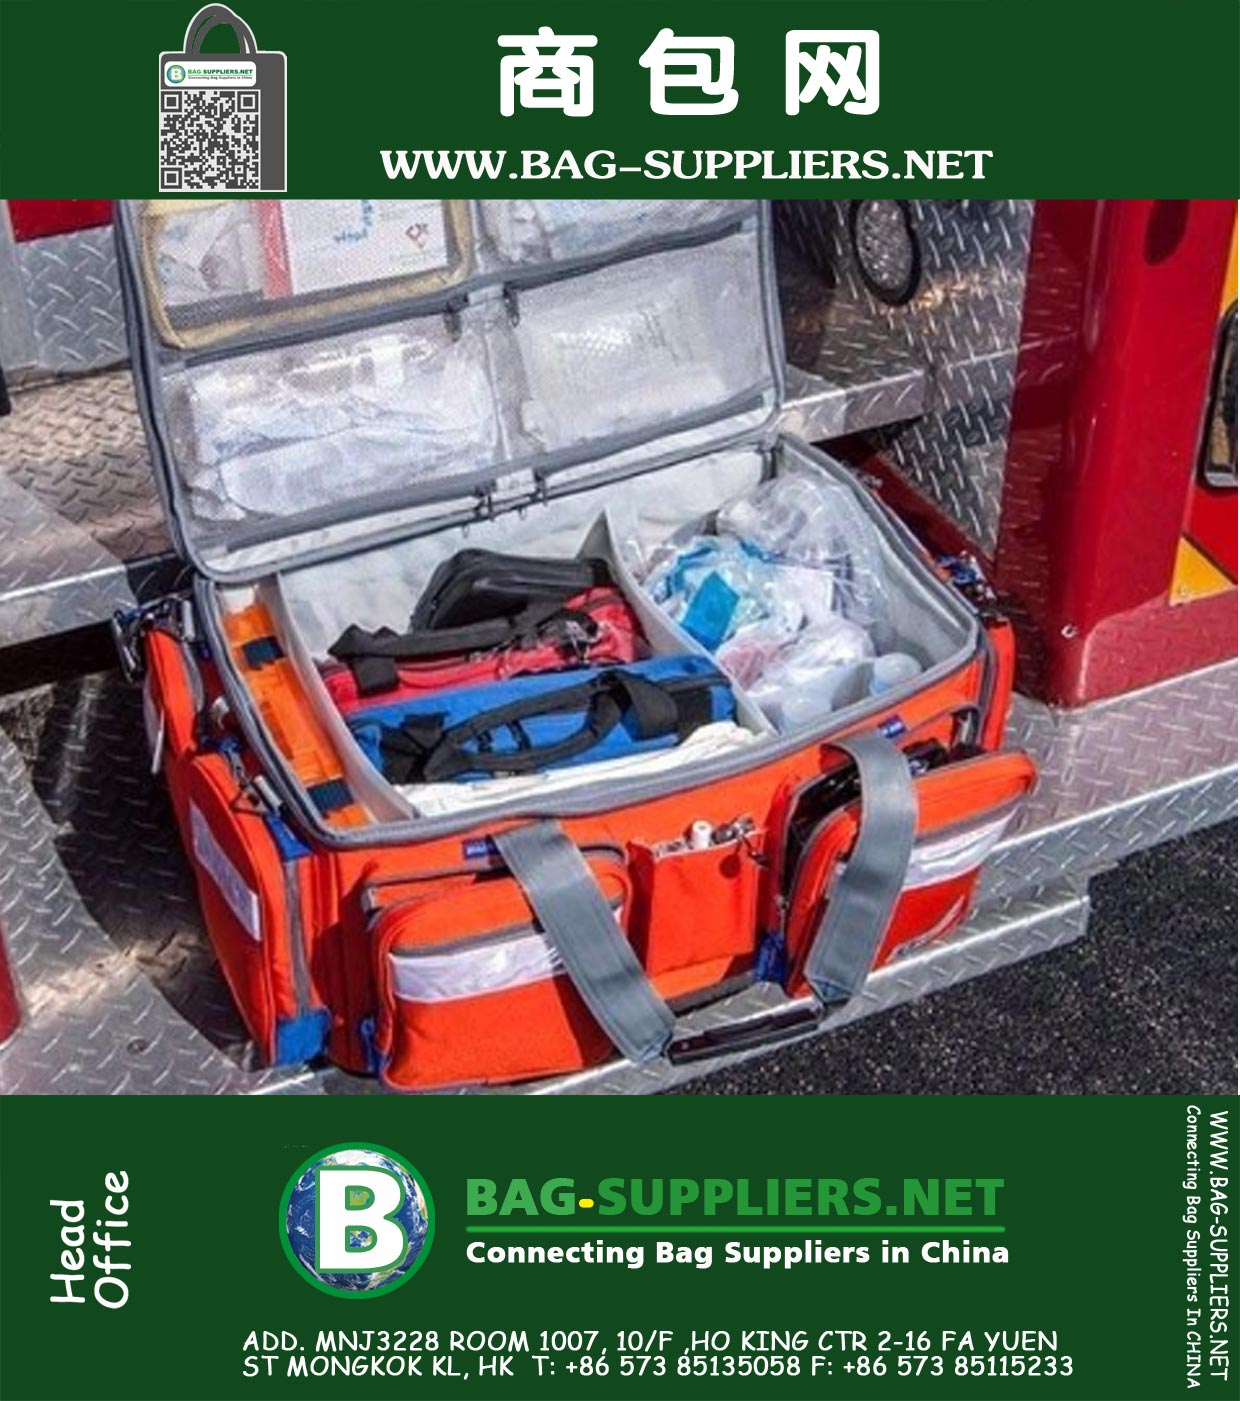 First Responder EMT Bag